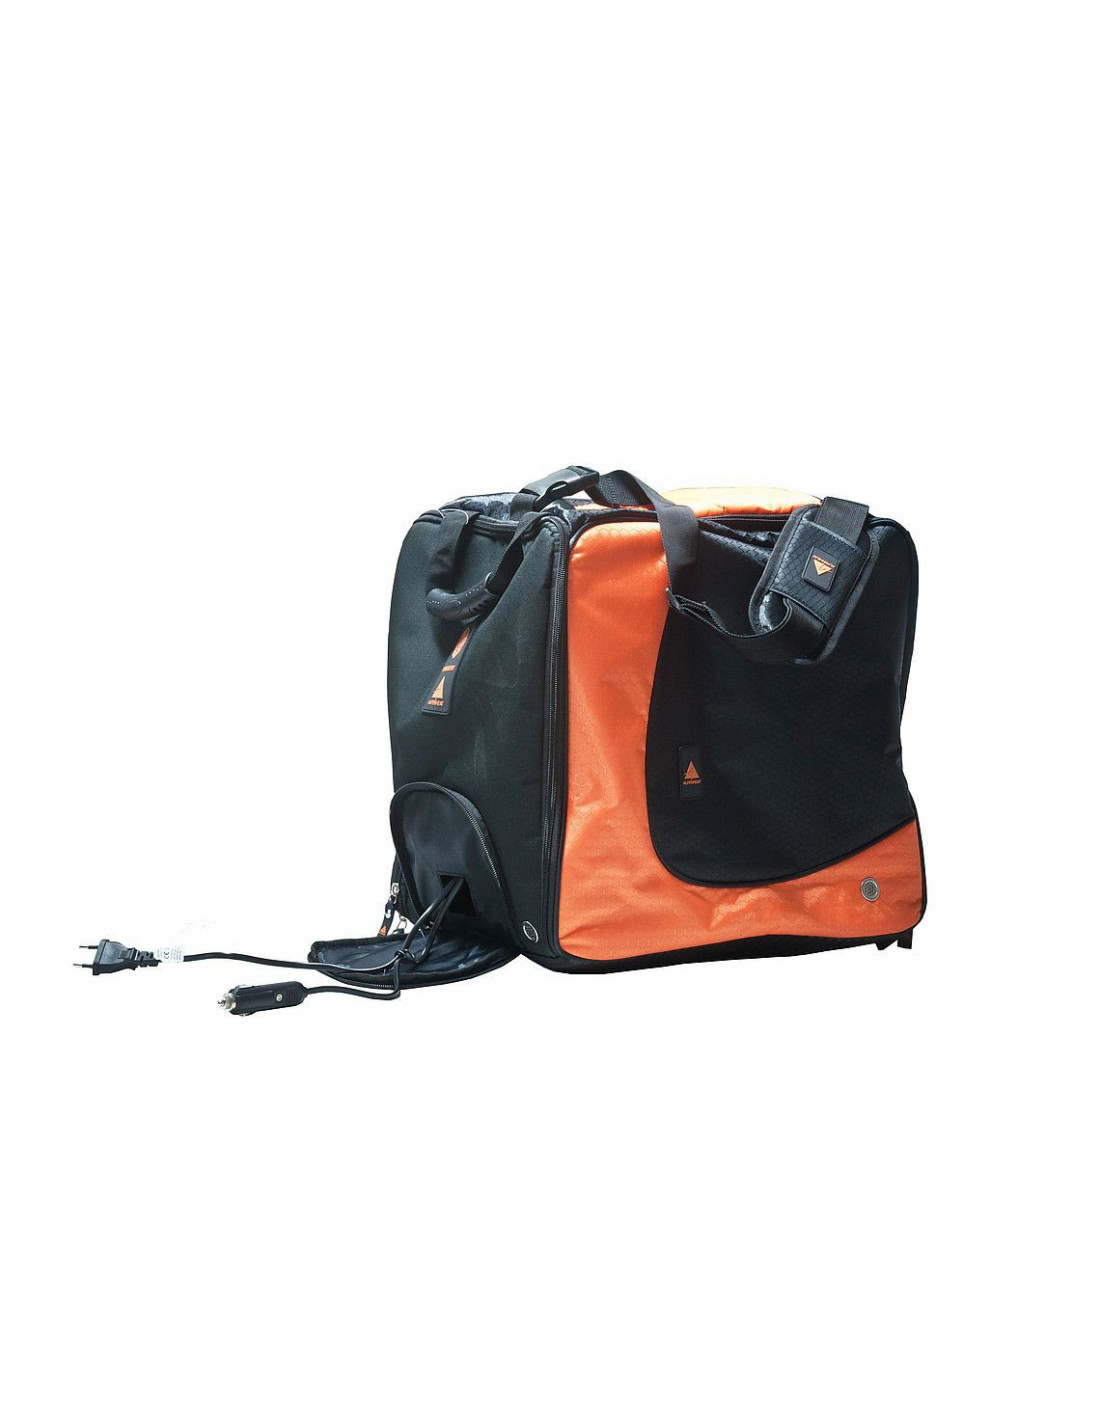 Alpenheat Skischuhtasche Fire-Bootbag schwarz/orange zum Bestpreis